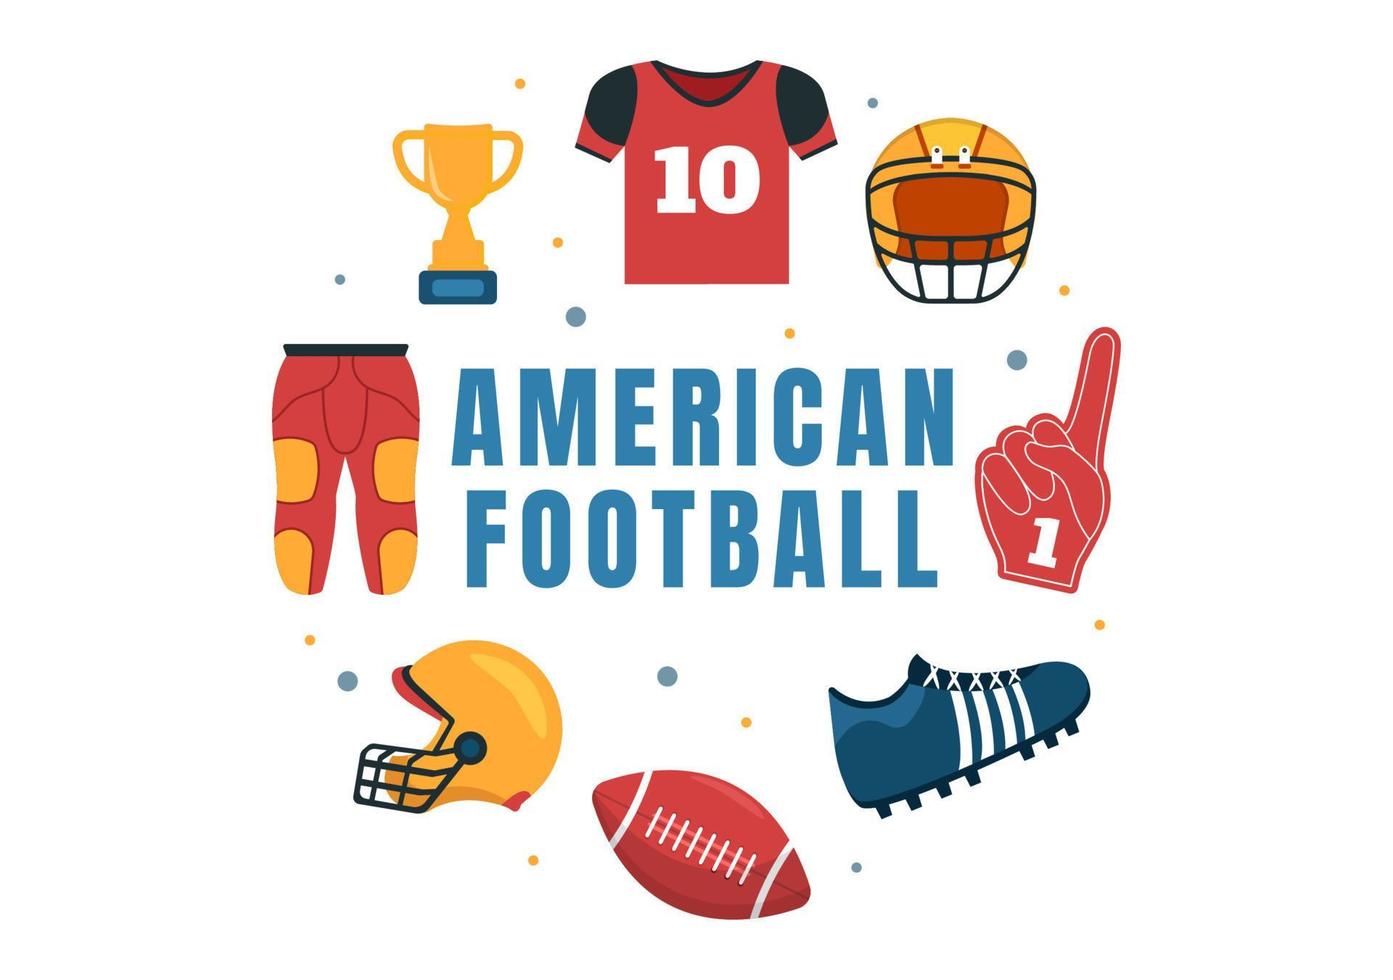 el jugador de fútbol americano con el juego usa una pelota de forma ovalada y es marrón en el campo ilustración plana de dibujos animados dibujados a mano vector